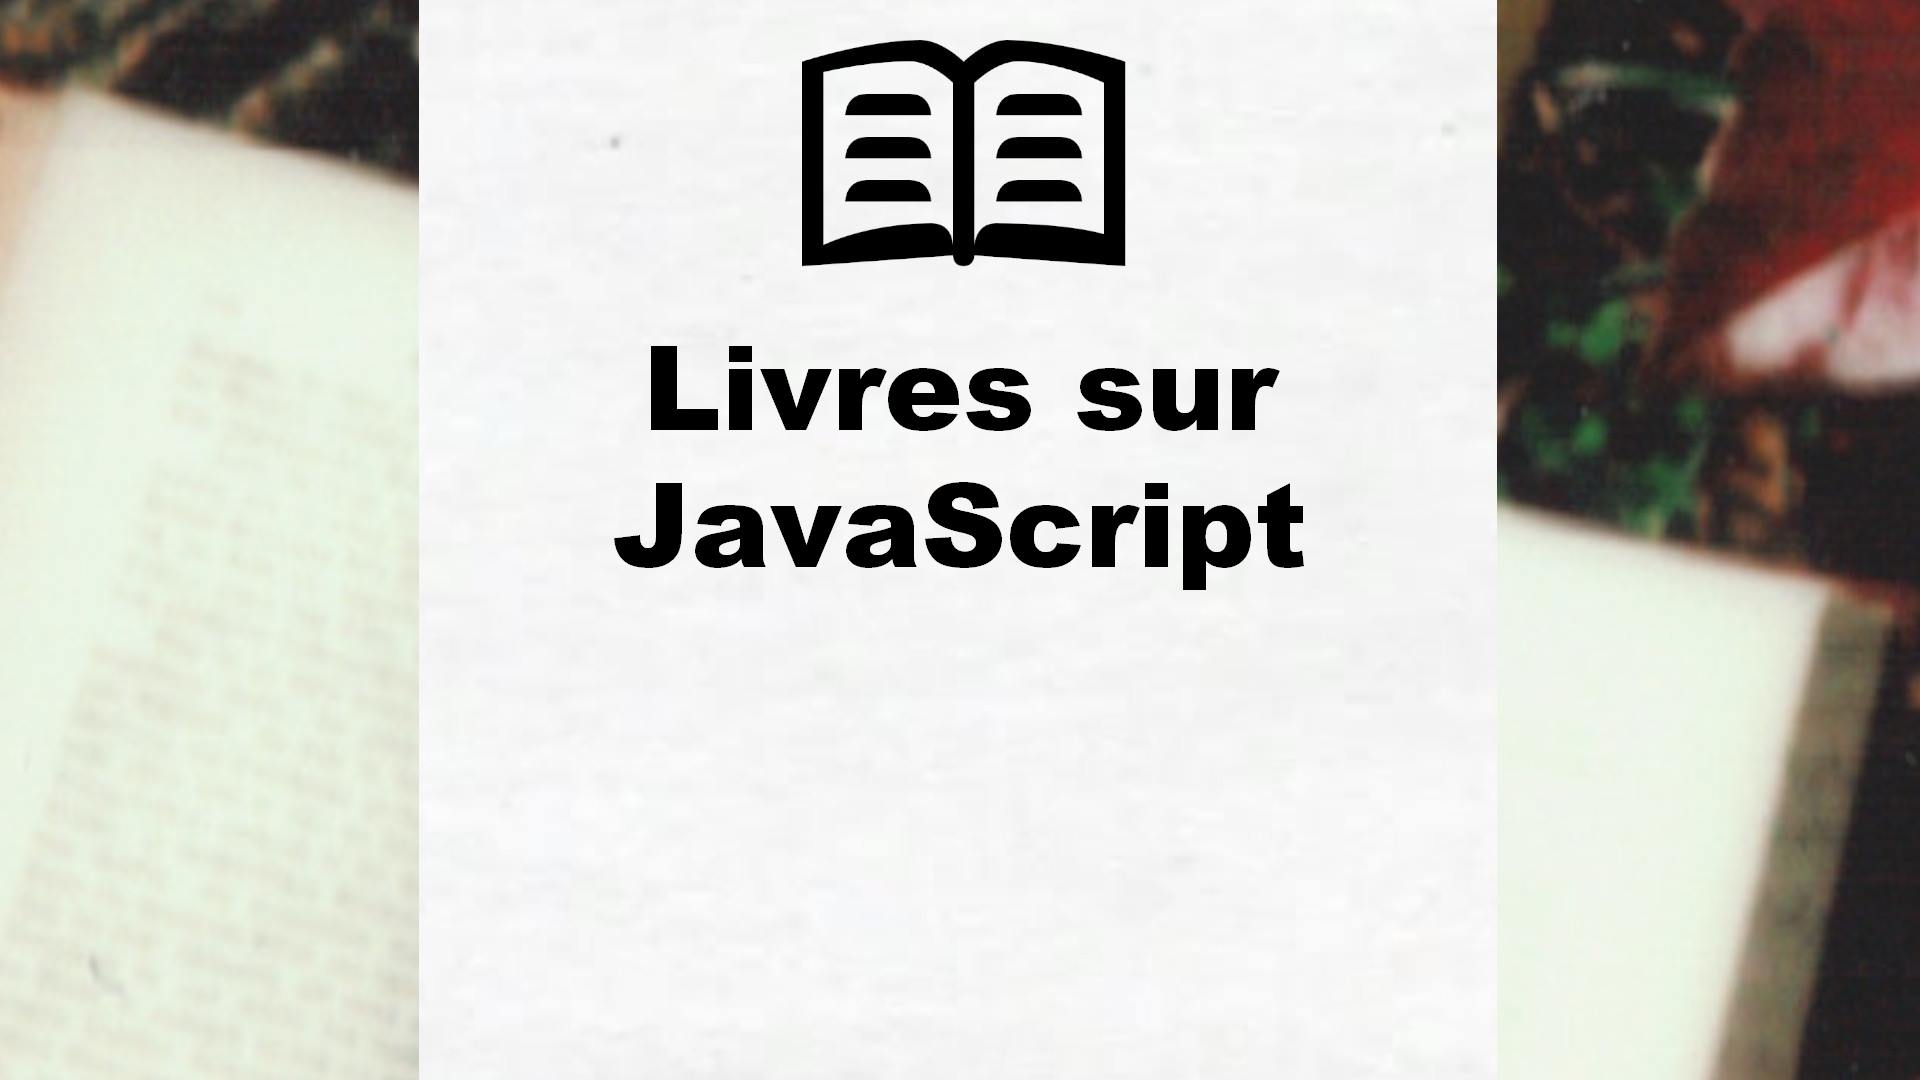 Livres sur JavaScript